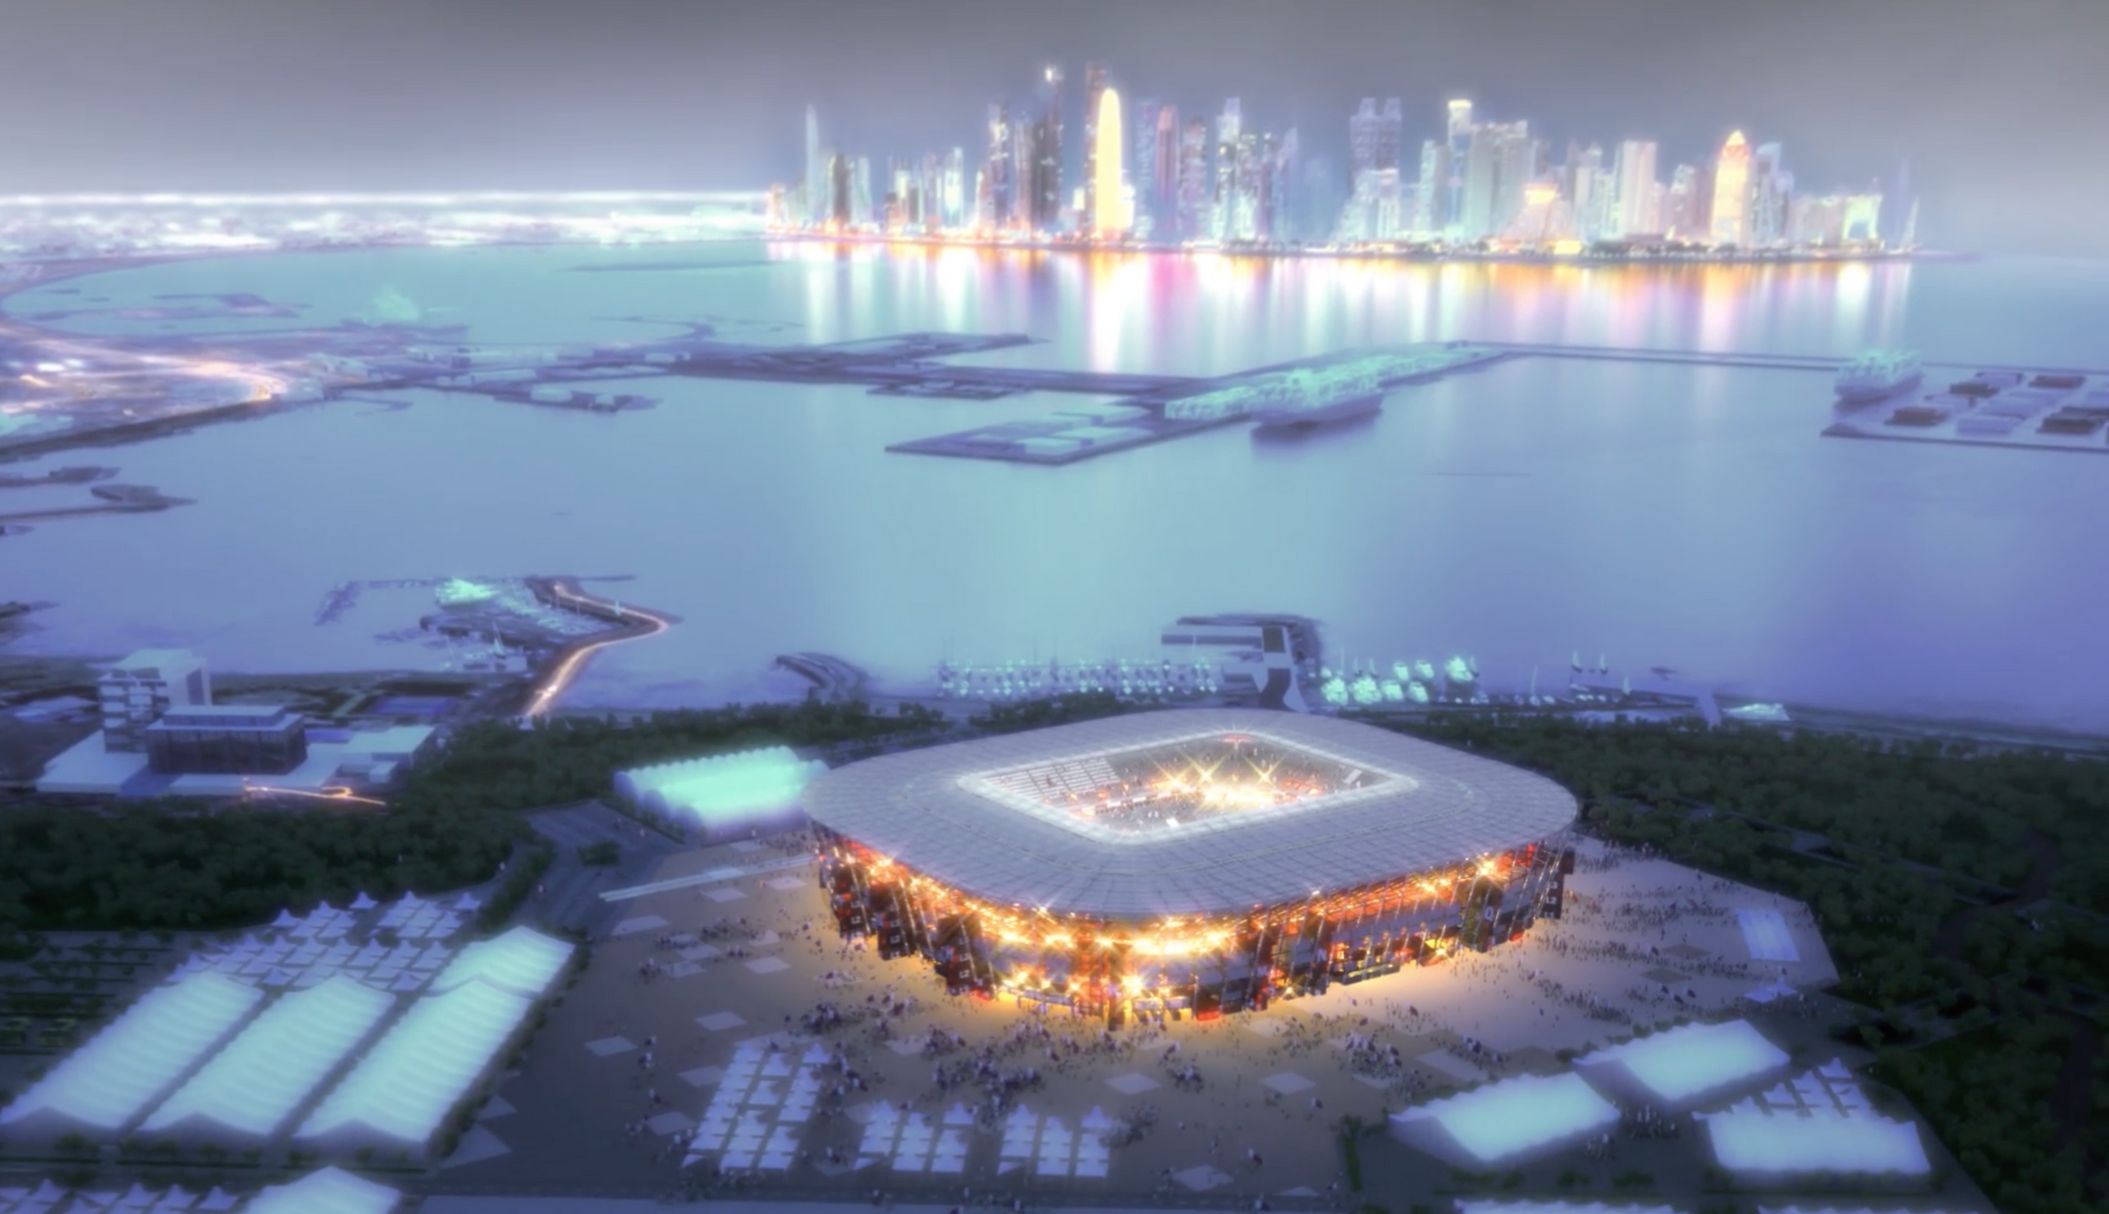 Podívejte se, jak bude vypadat Ras Abu Aboud stadion v Kataru. Vybuduje se pro utkání FIFA 2022